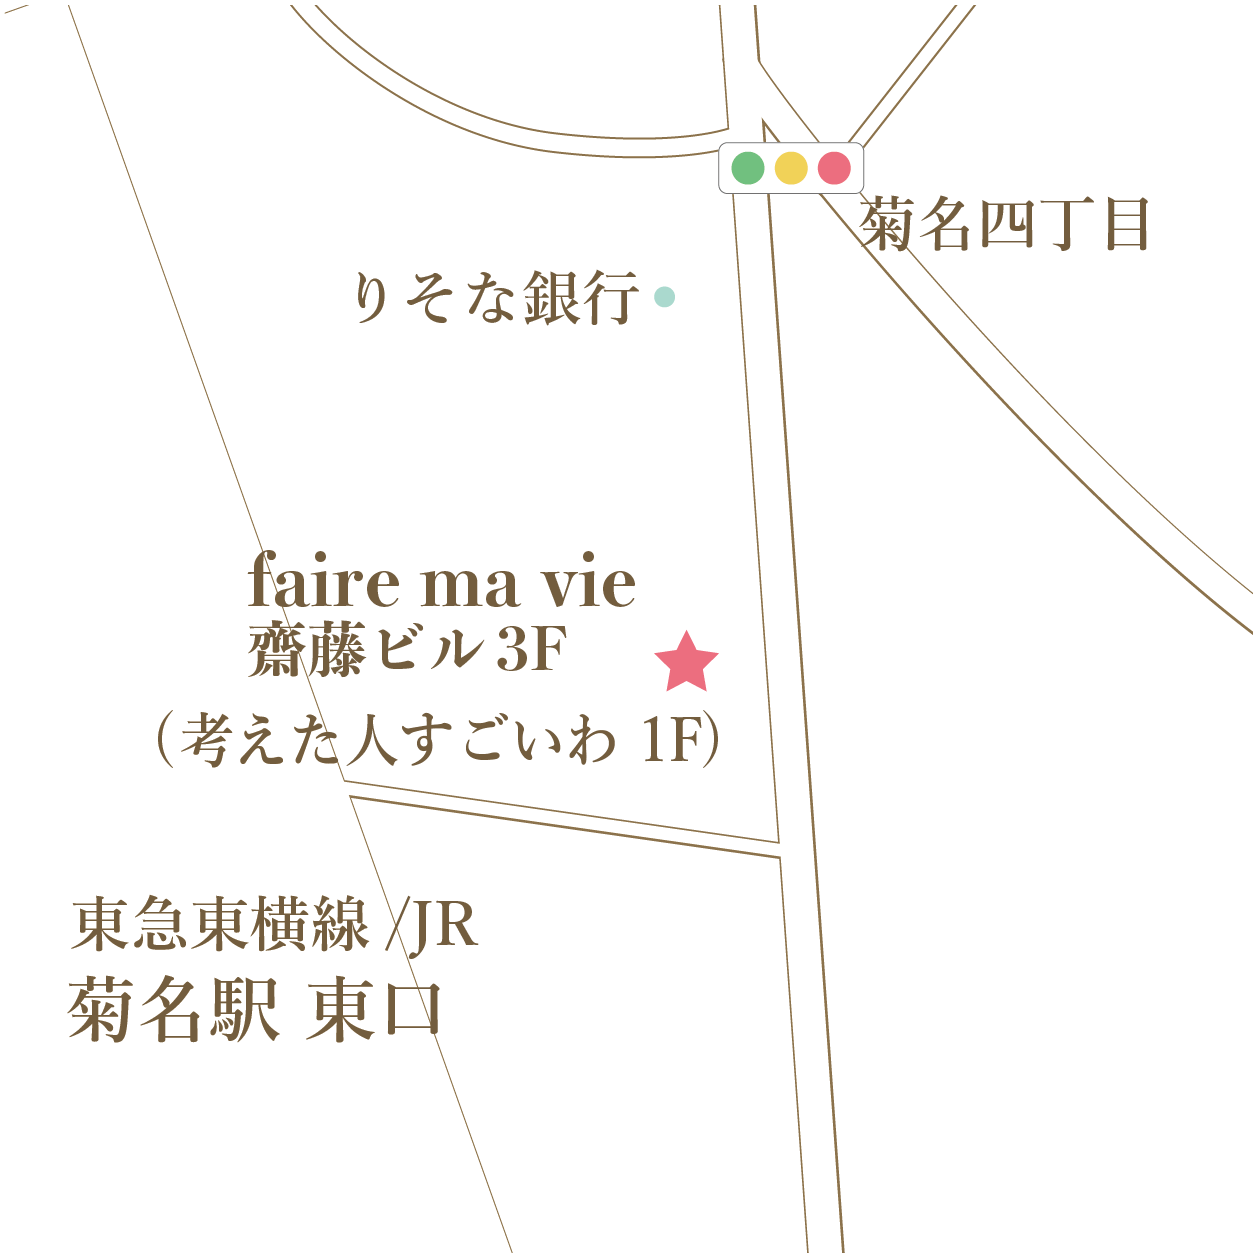 桜木町地図 [復元]_アートボード 1